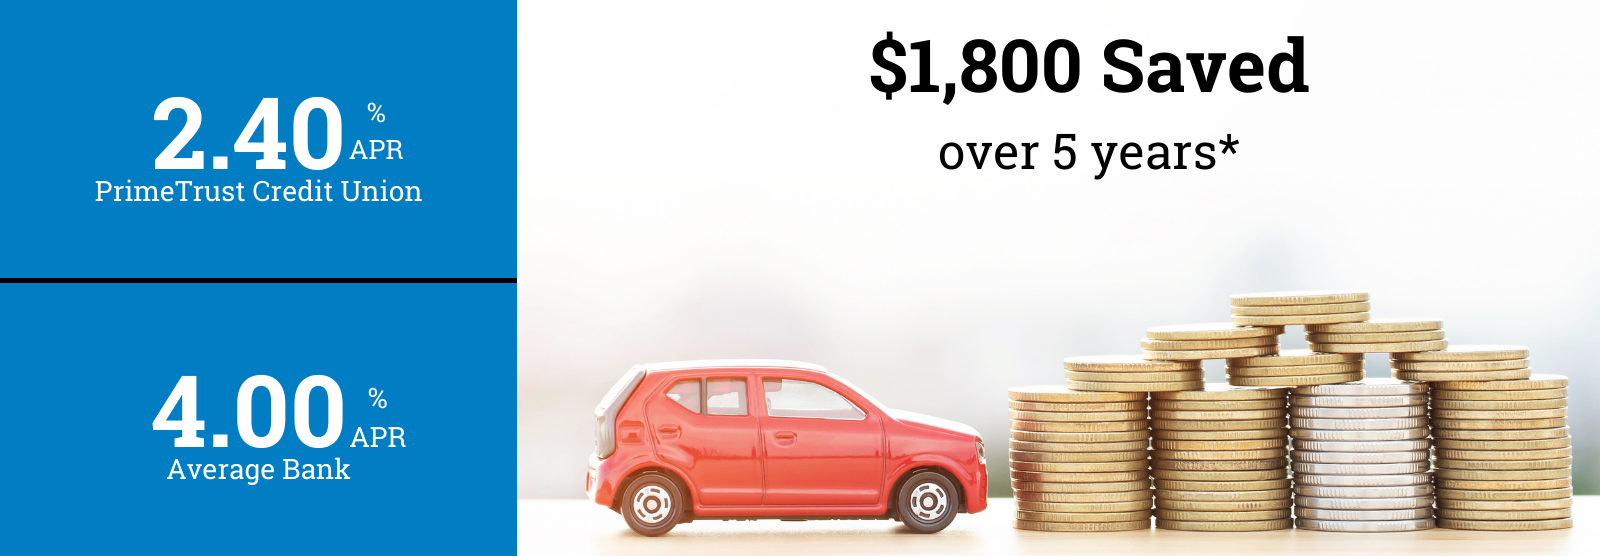 Savings calculated on PrimeTrust auto loan